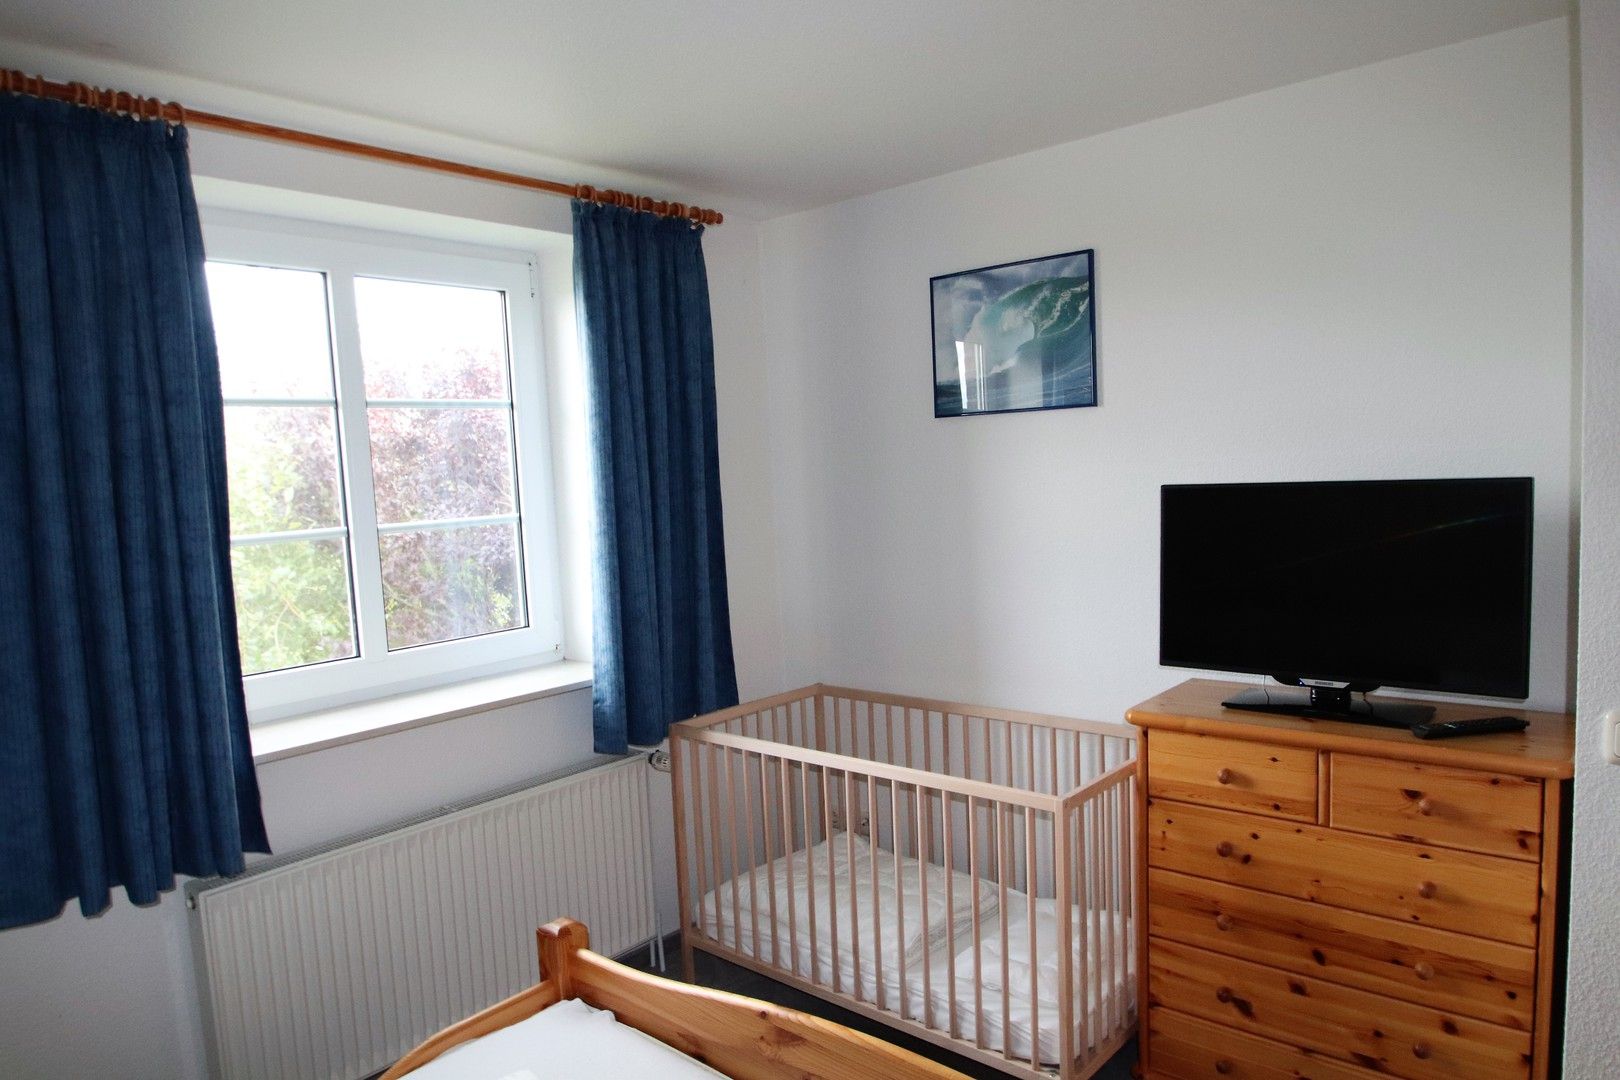 Schlafraum mit Doppelbett und Babybett im Obergeschoss Ferienhaus Queller 24c Nordsee Friedrichskoog